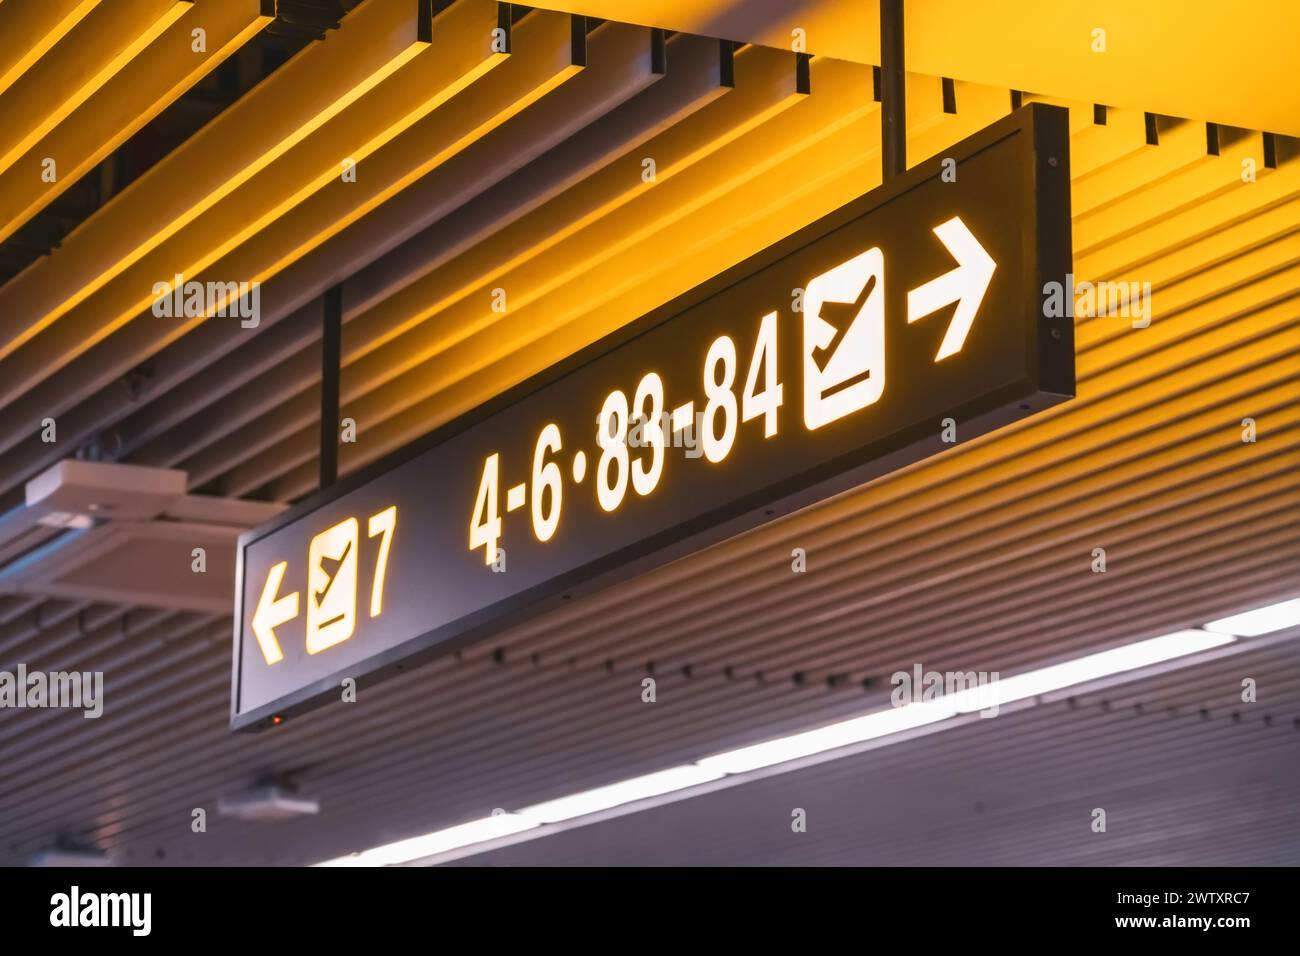 Indicazioni per i numeri di gate per i cancelli d'imbarco all'interno del terminal dell'aeroporto. Foto Stock